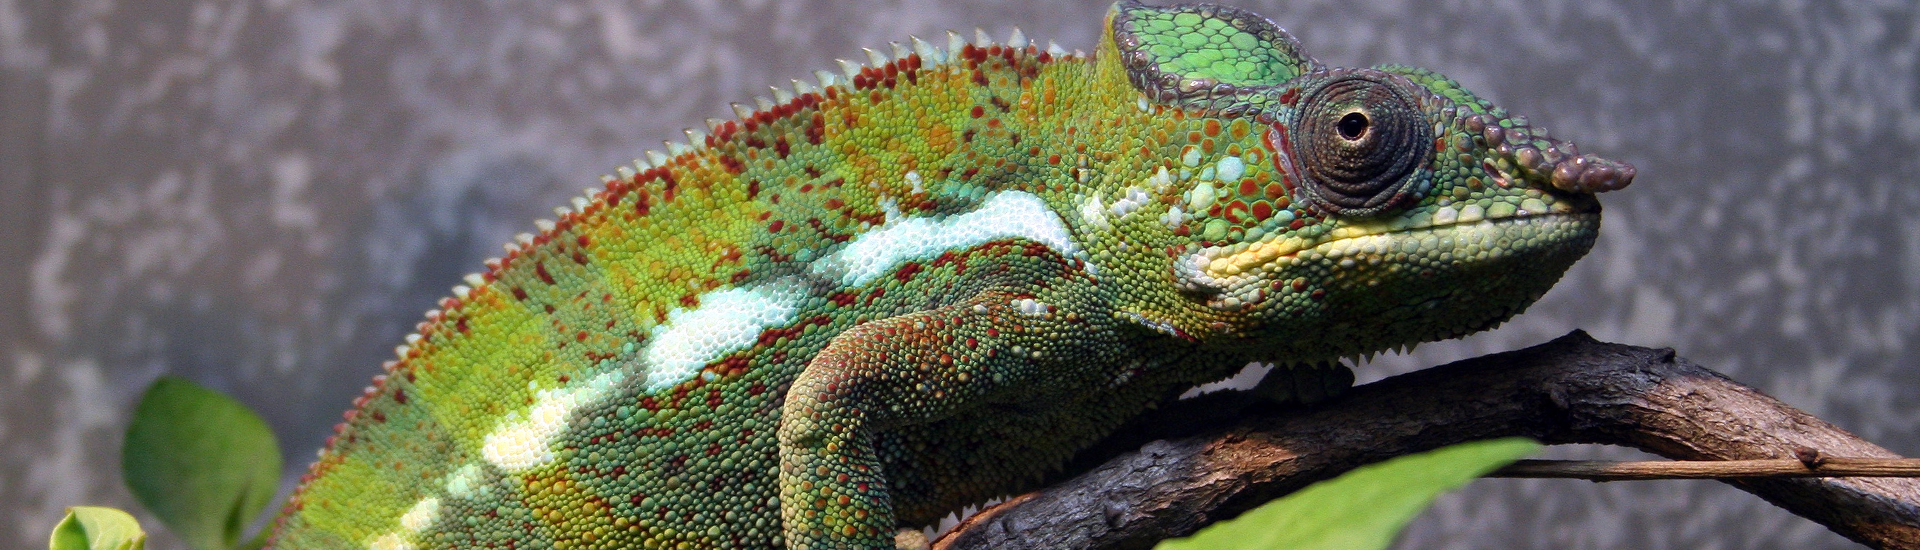 green spotted chameleon vivarium